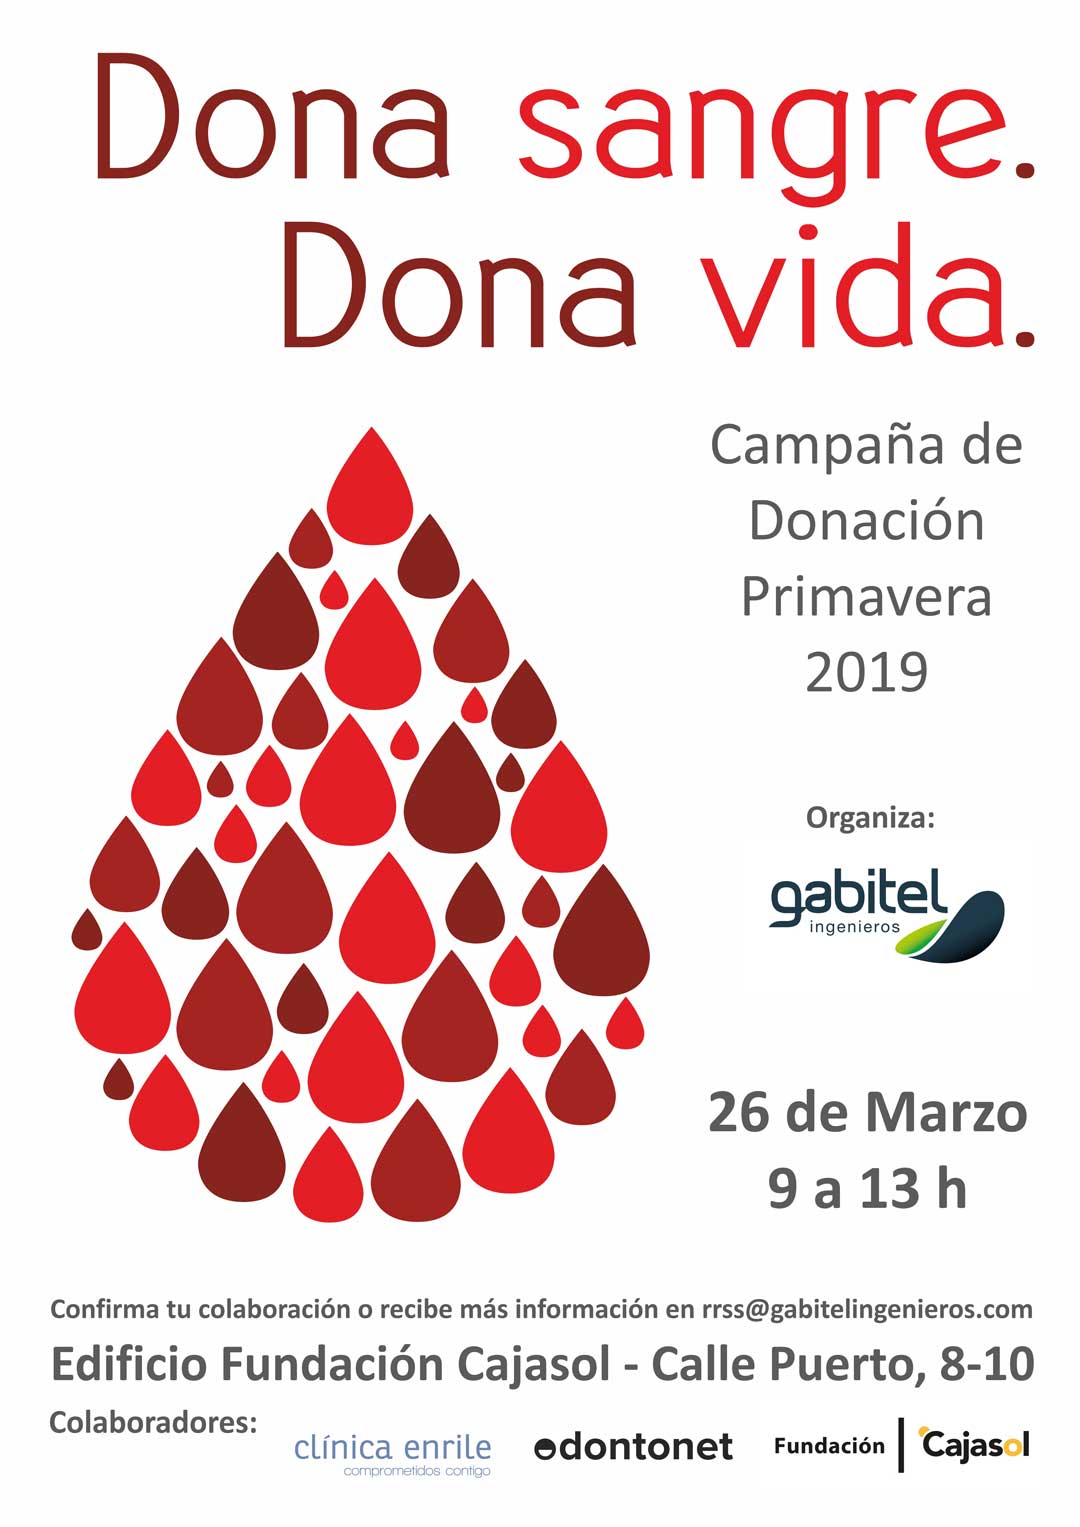 Cartel de donación de sangre Primavera 2019 en Huelva